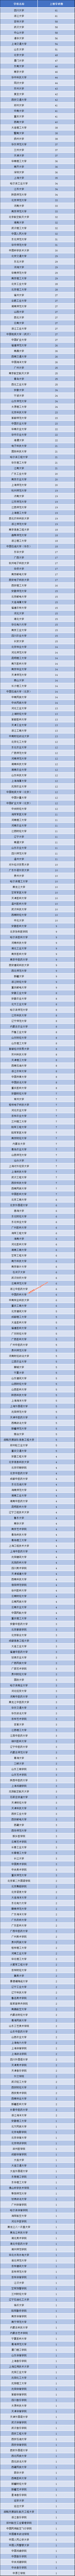 2019中国最好学科排名3